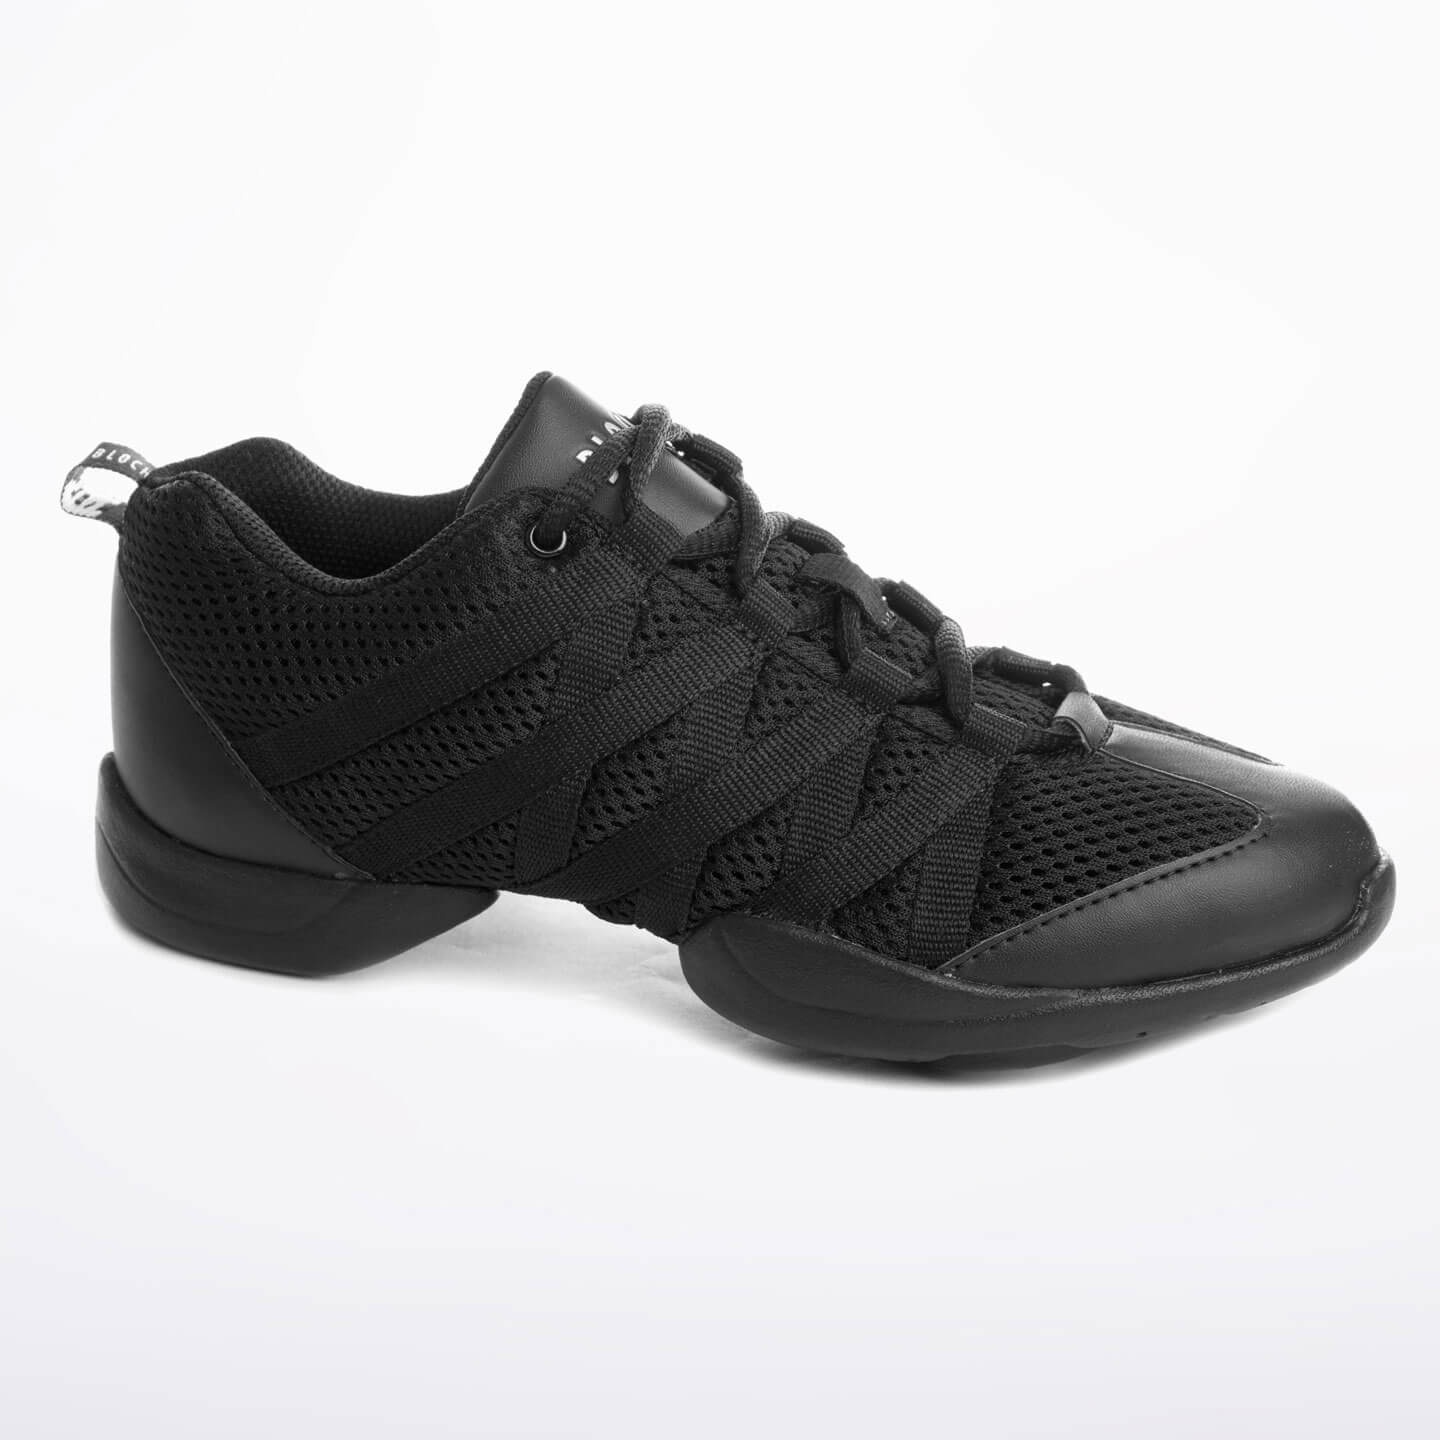 Zapatillas para danza en color negro.